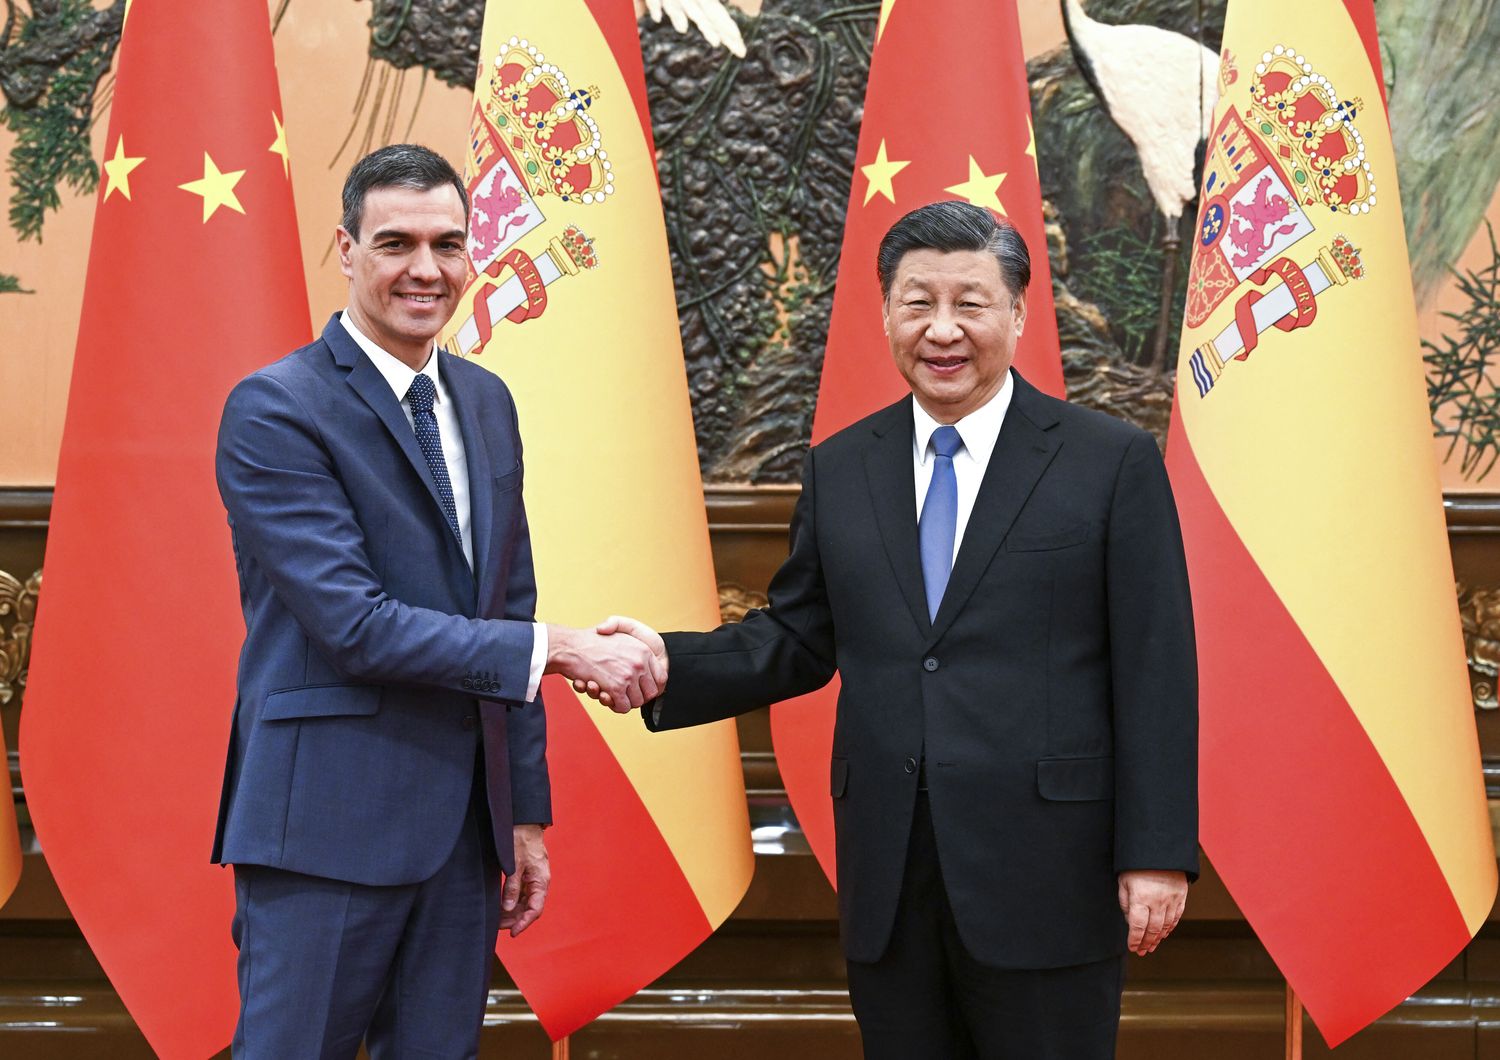 Pedro Sanchez e Xi Jinping